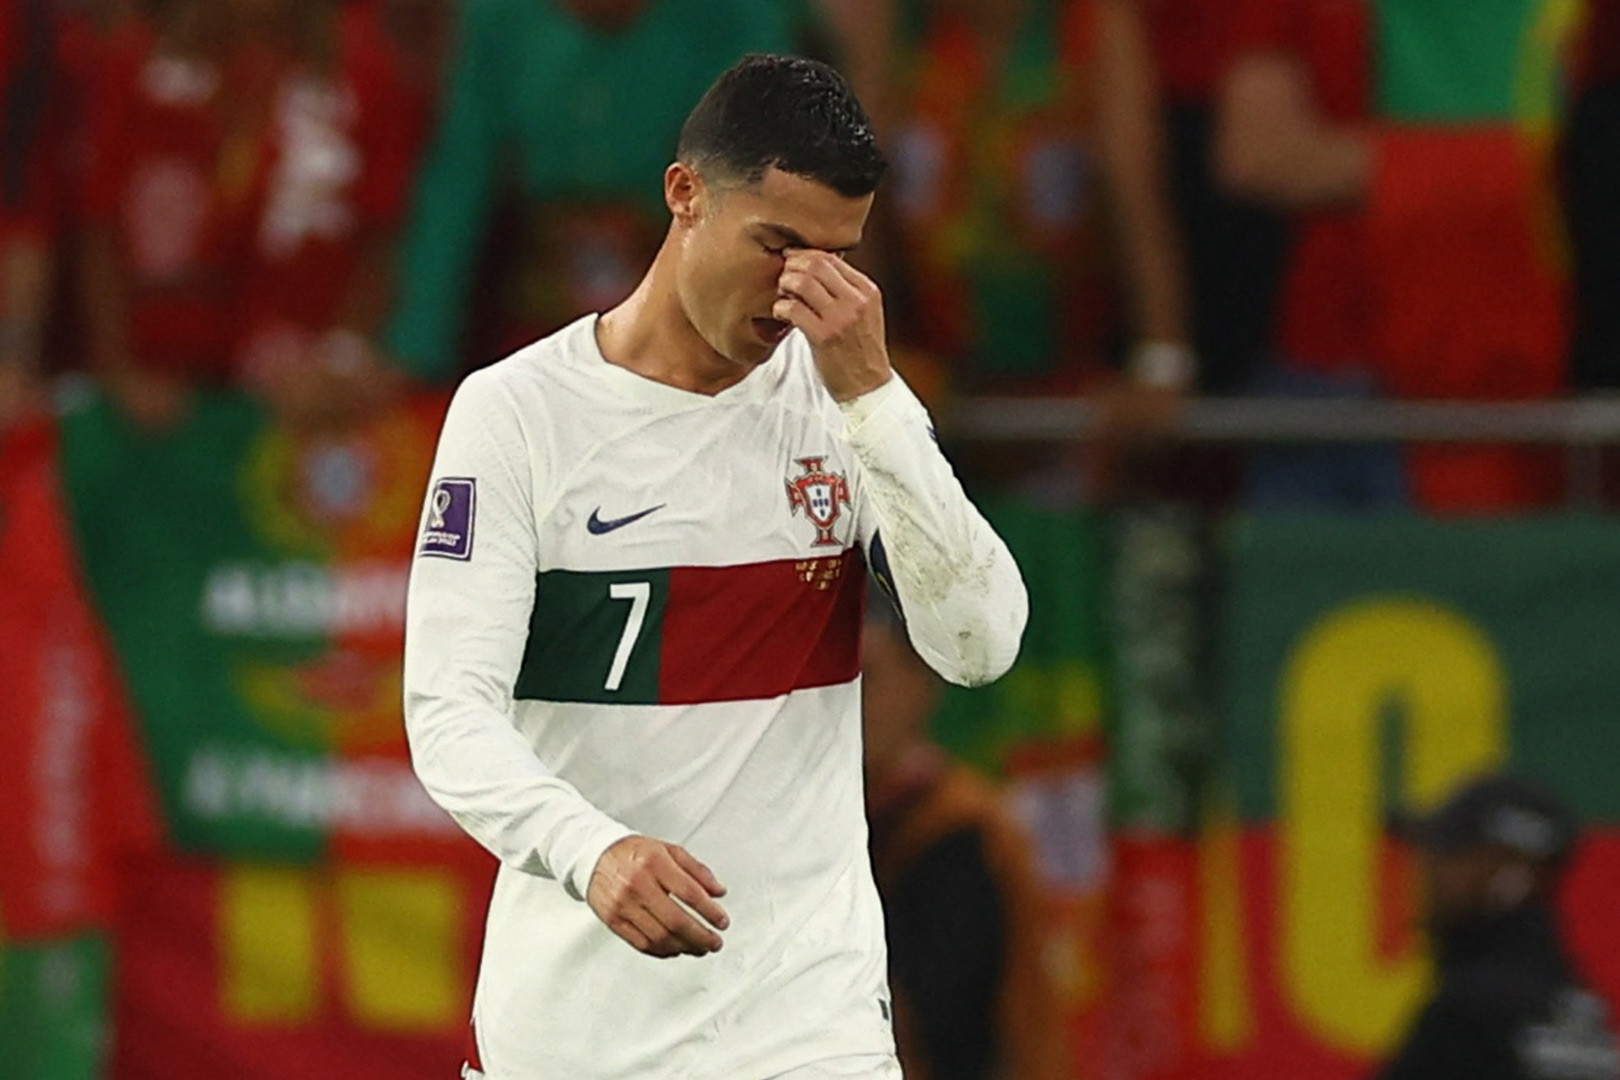 Bồ Đào Nha thất bại: Không phải lúc nào cũng có được chiến thắng và Bồ Đào Nha đã phải nhận thất bại. Tuy nhiên, hãy xem hình ảnh đầy tinh thần thể thao và khả năng chiến đấu của các cầu thủ khi họ đã cố gắng hết sức trong trận đấu.